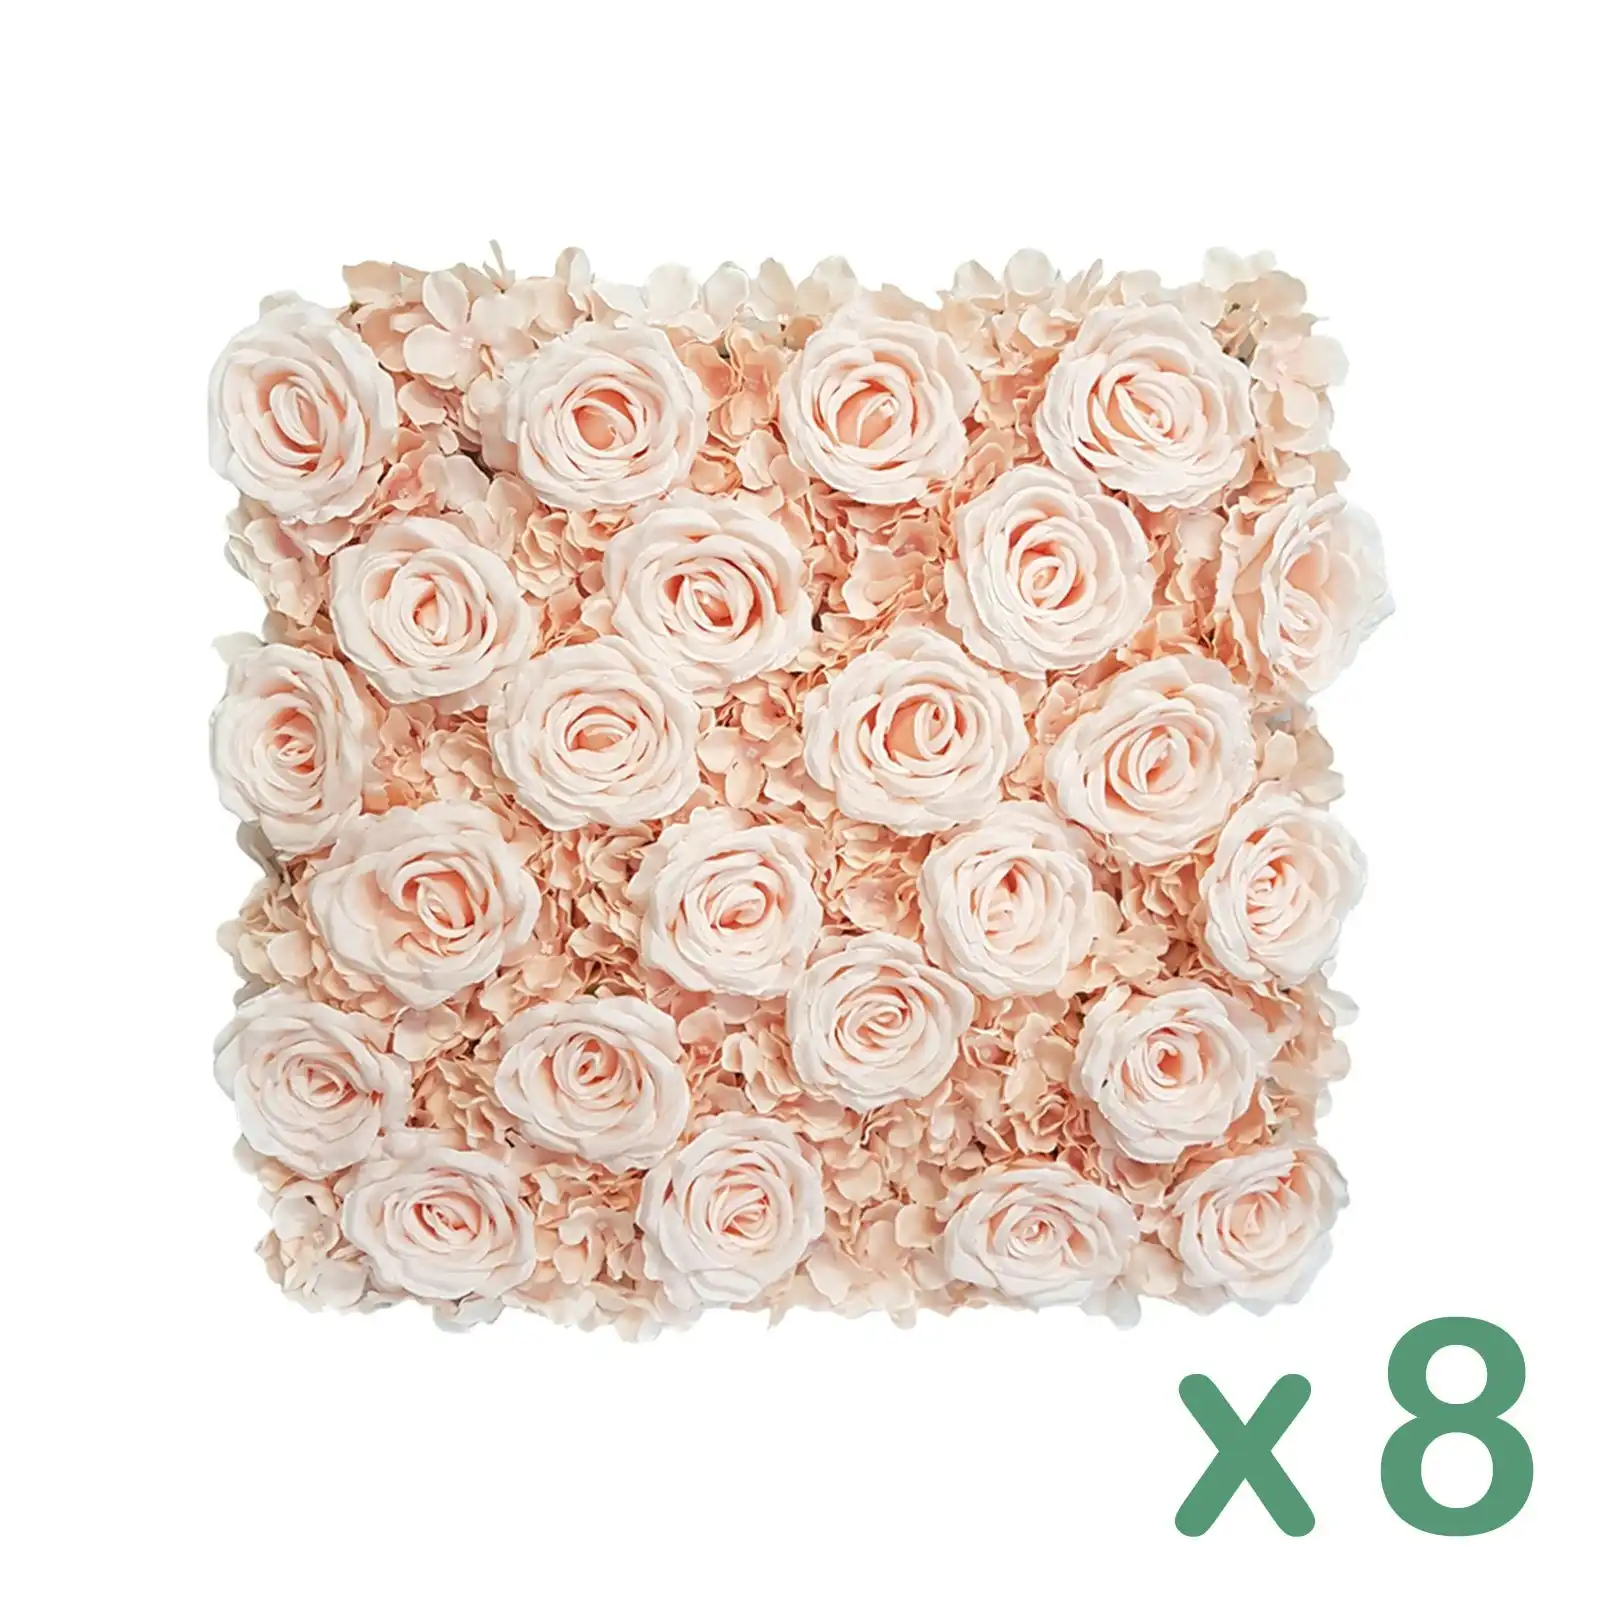 Carton of 8 - Artificial Flower Hedges - Peach 50cm x 50cm